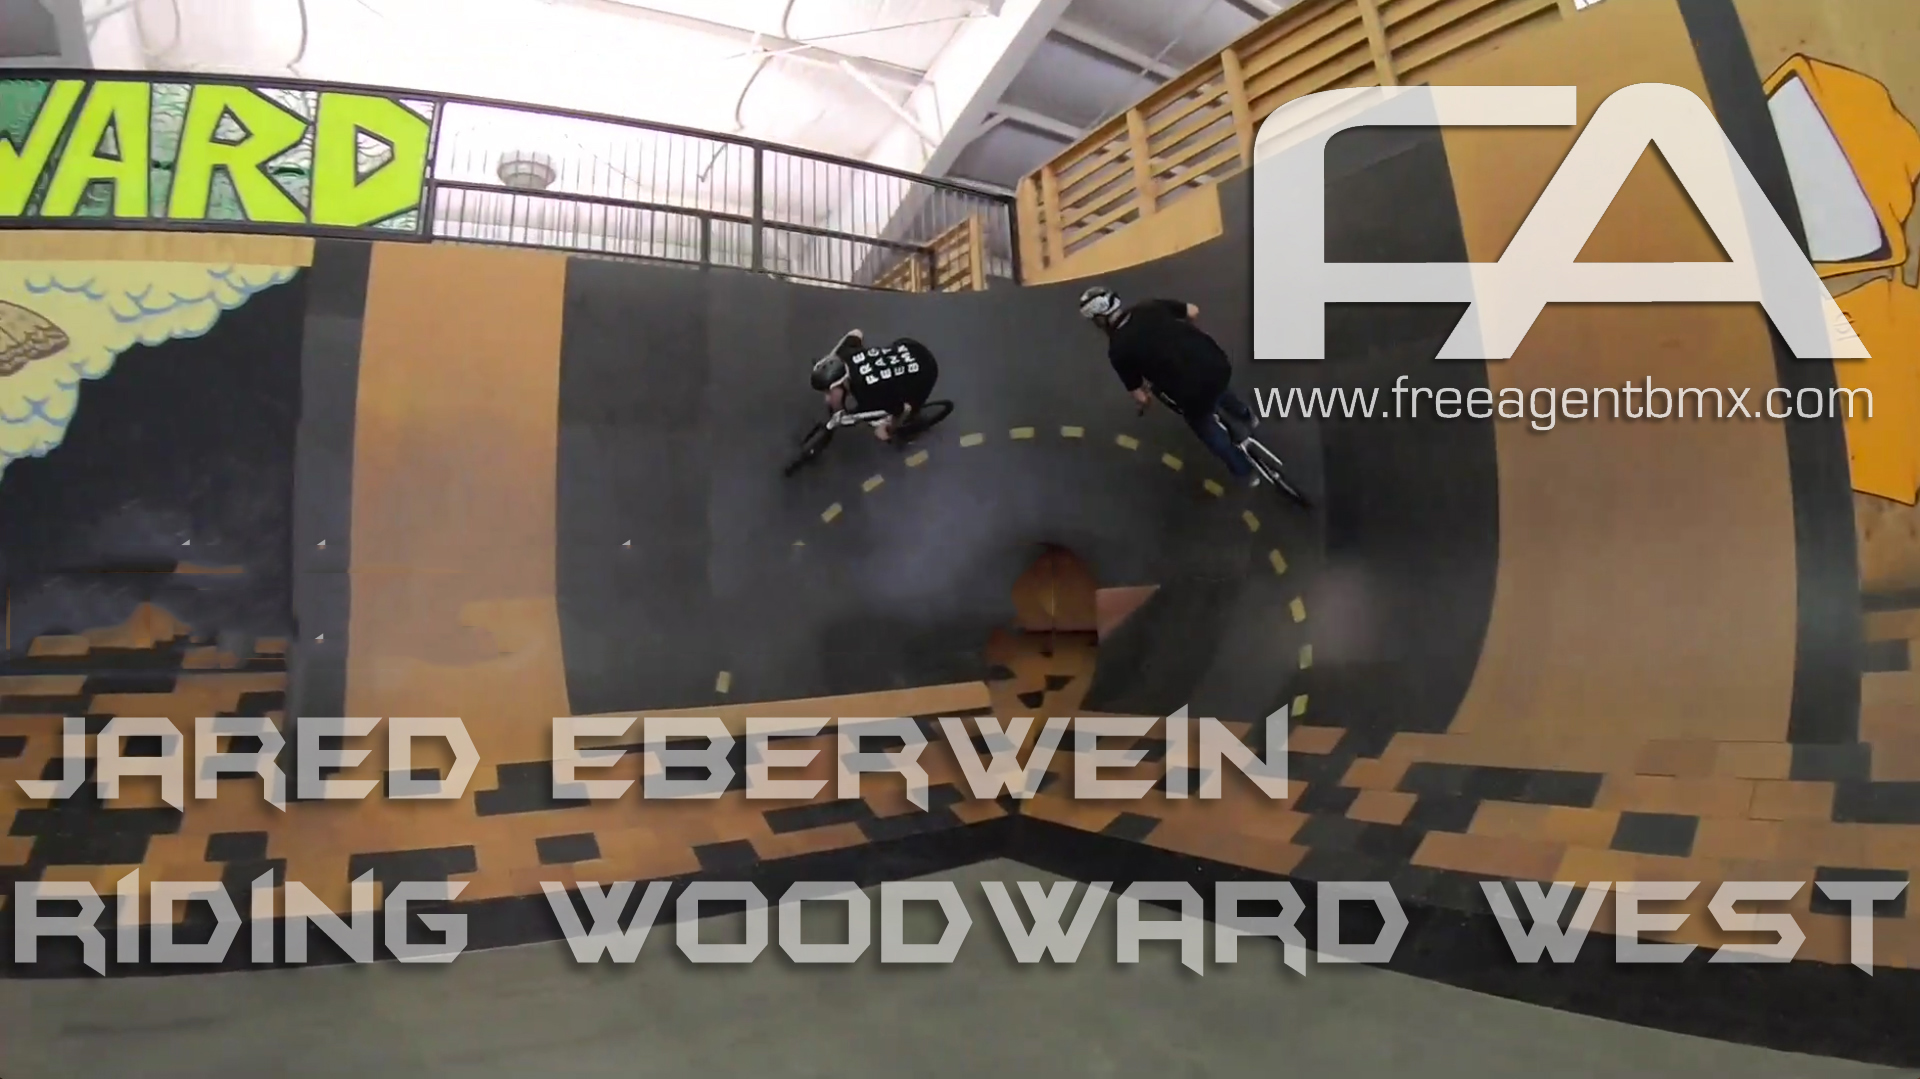 Free Agent rider, Jared Eberwein, riding Woodward.